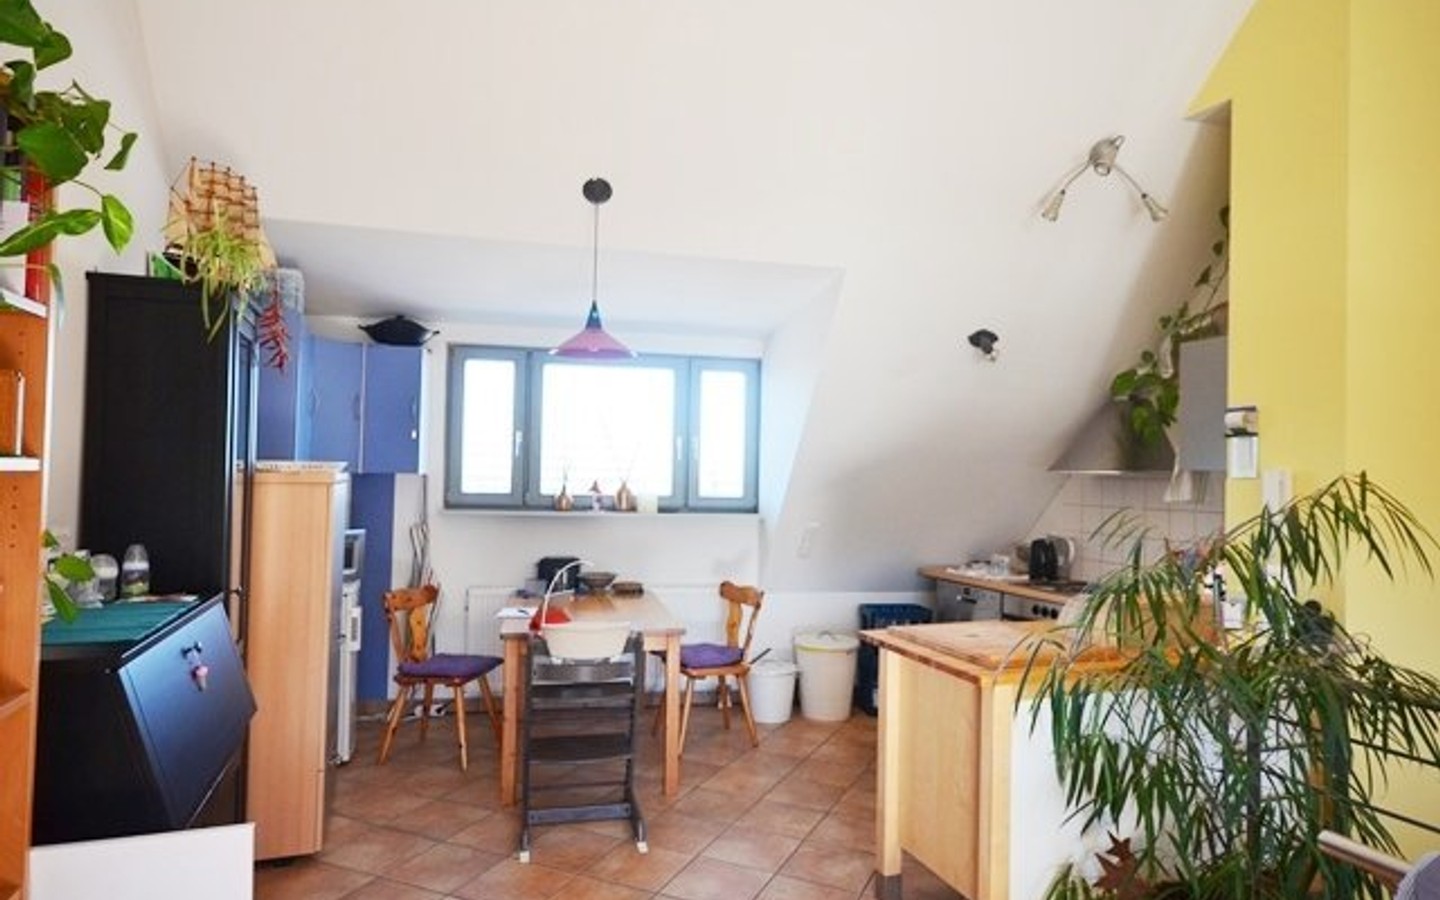 Küchen /Essbereich - Charmates Kleinod in HD - Handschuhsheim: moderne 2 Zimmermaisonettwohnung mit großer Dachterrasse